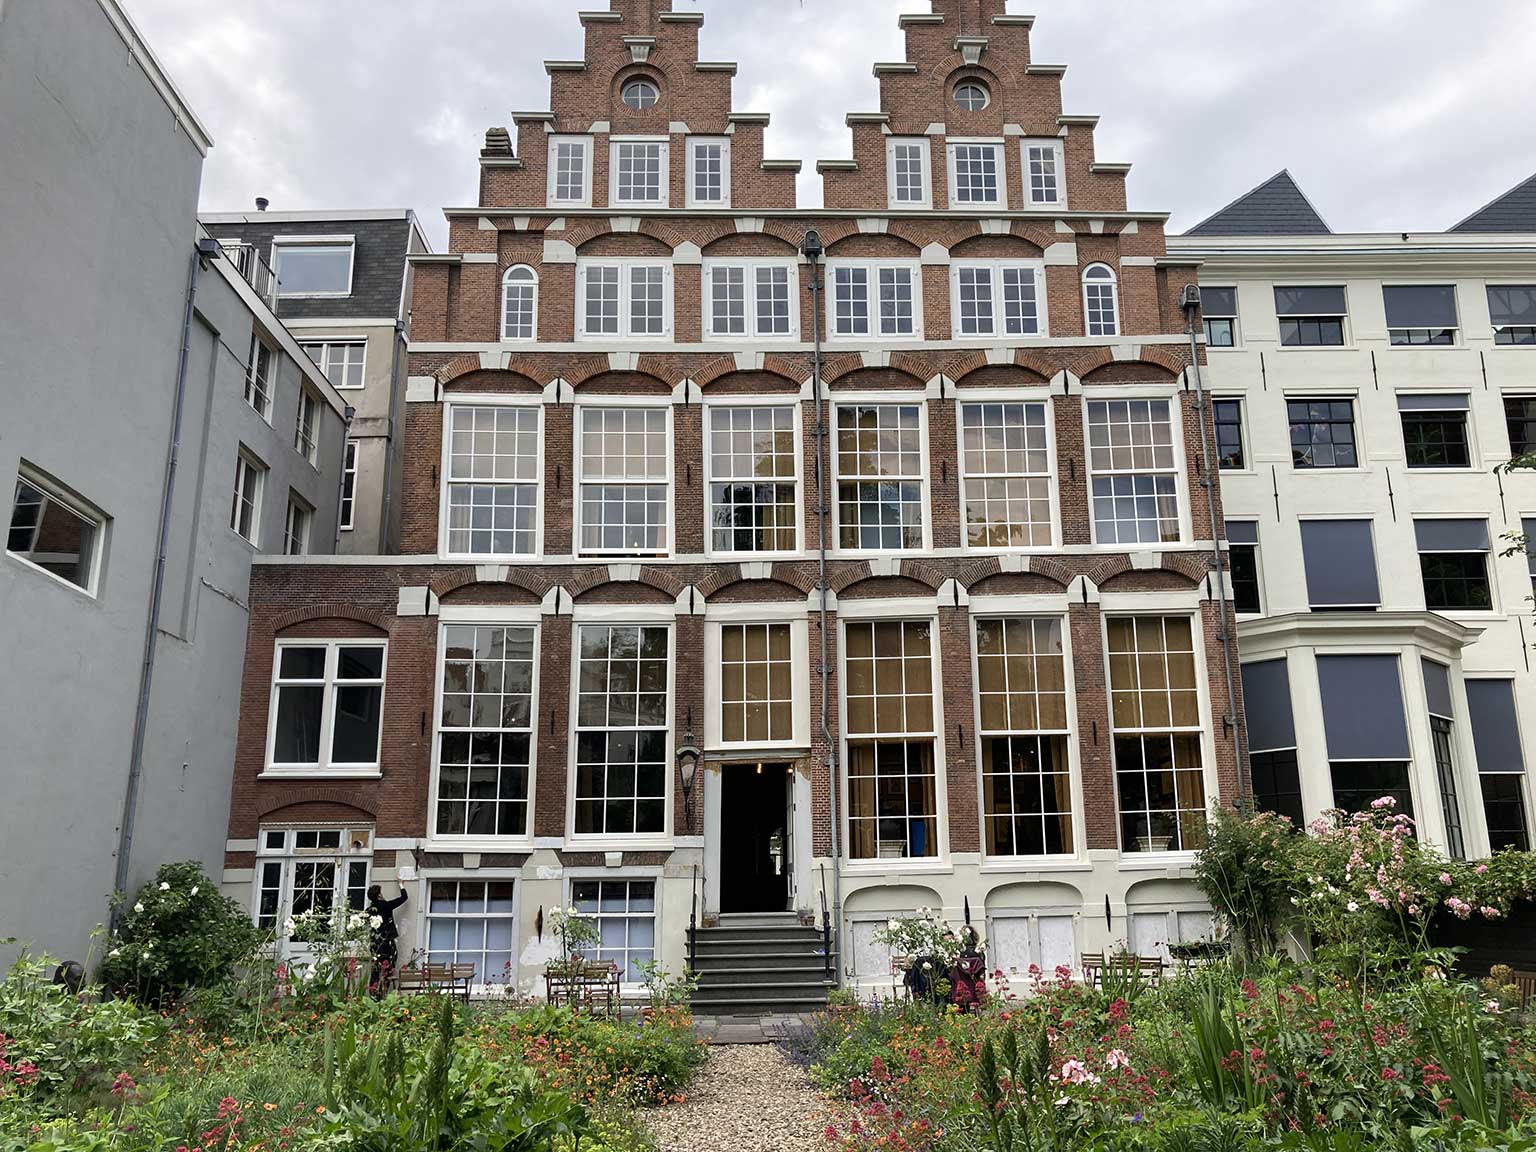 Back of Huis met de Hoofden, Amsterdam, viewed from the garden